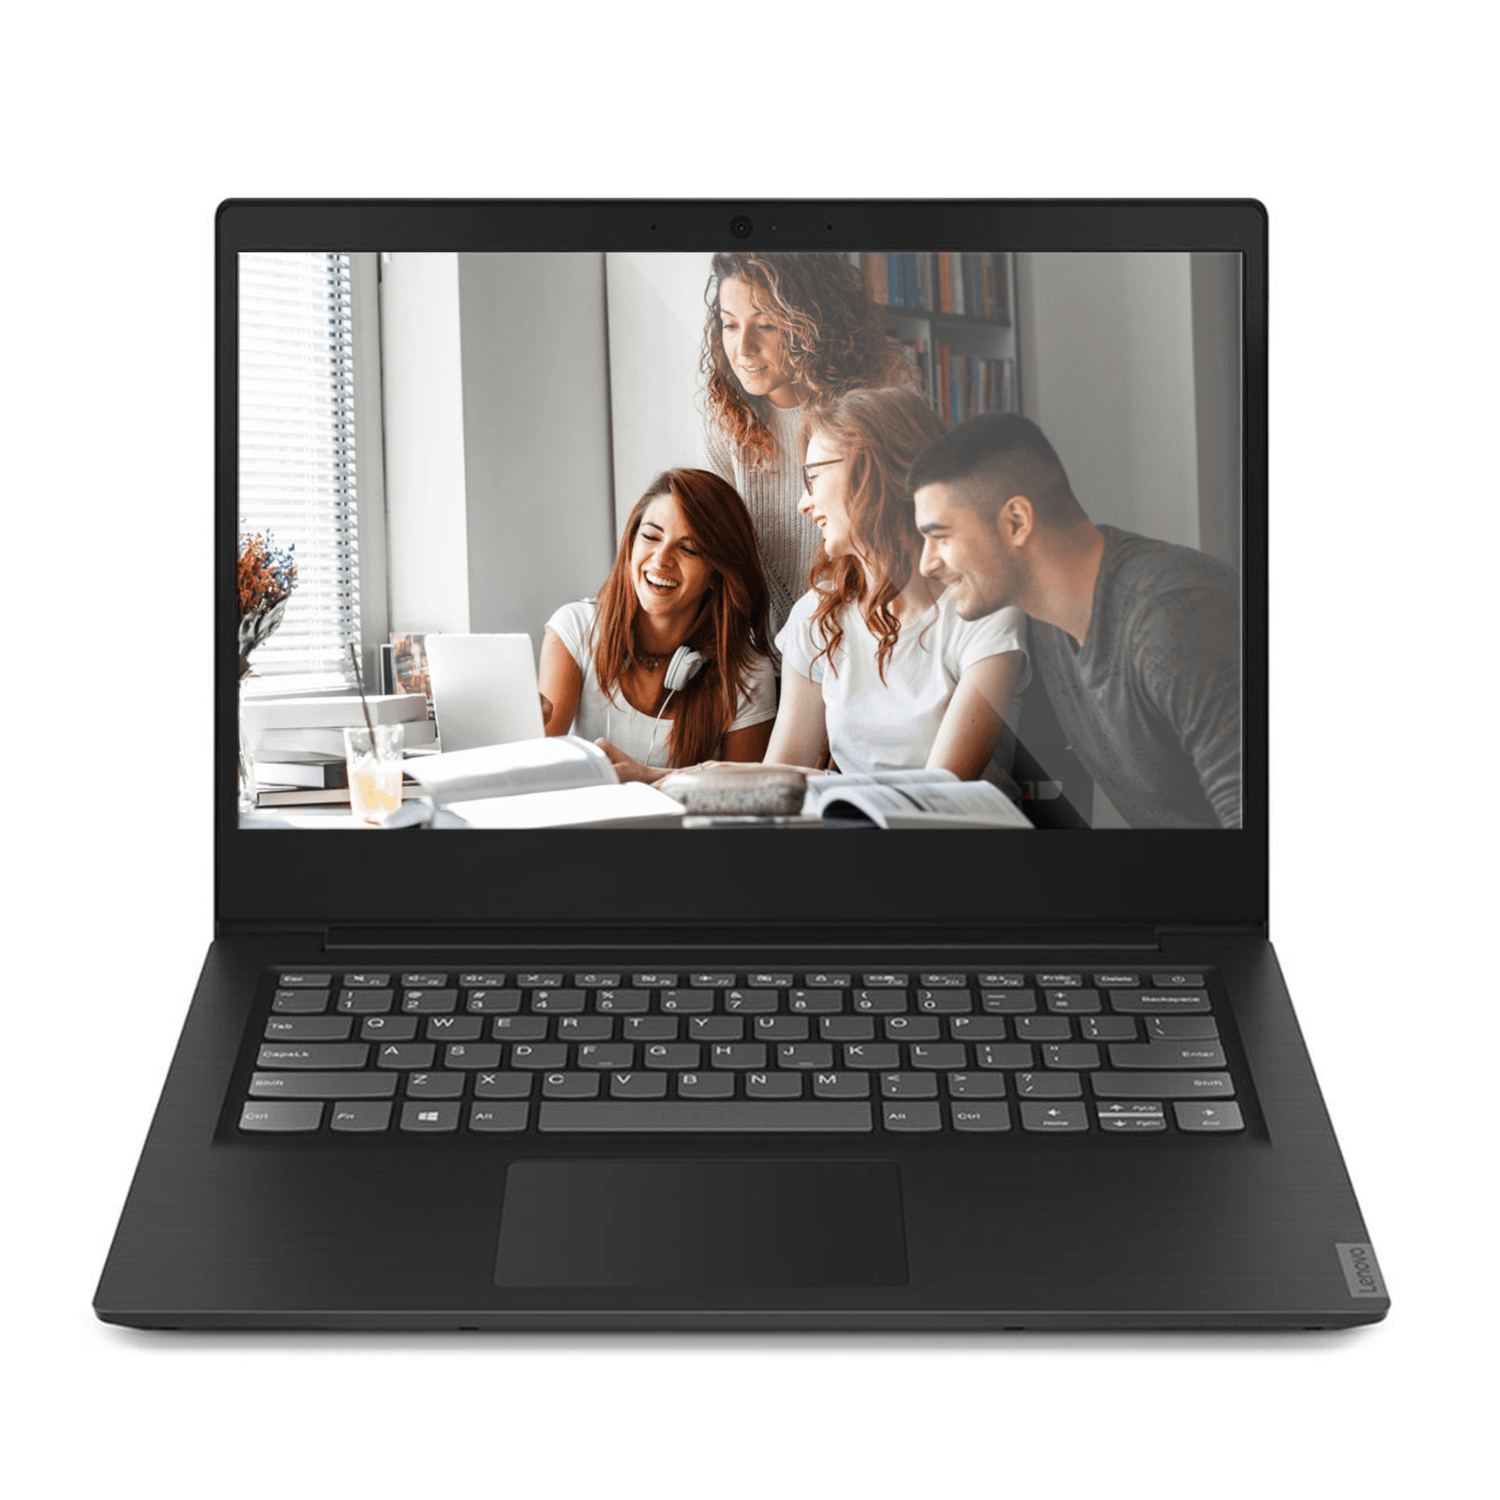 Laptop Lenovo Ideapad S145 14" Amd A4-9125 2.30 Ghz 4gb Ddr4